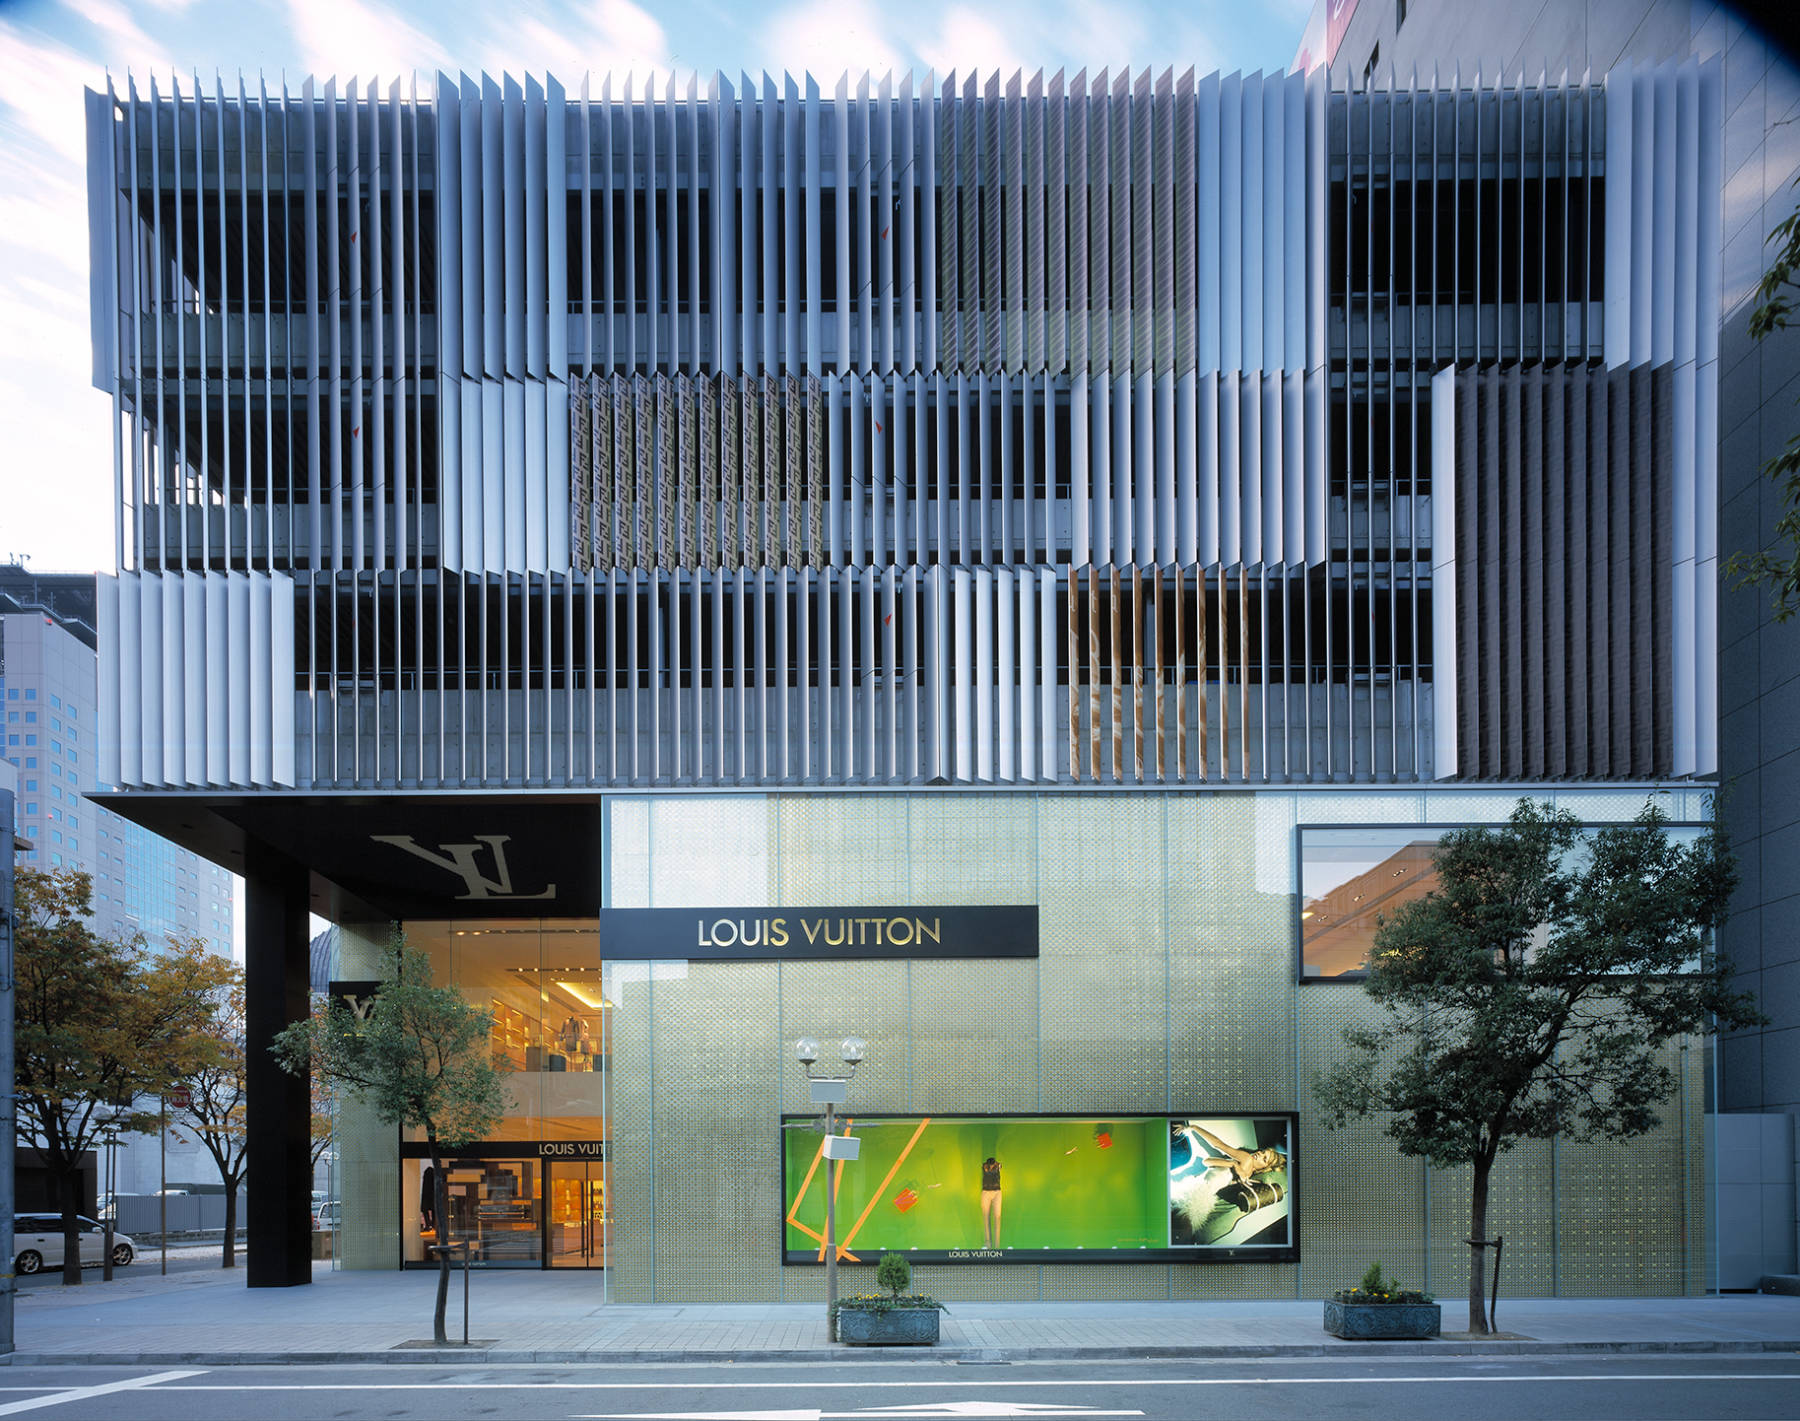 Louis Vuitton  Facade architecture, Retail facade, Commercial architecture